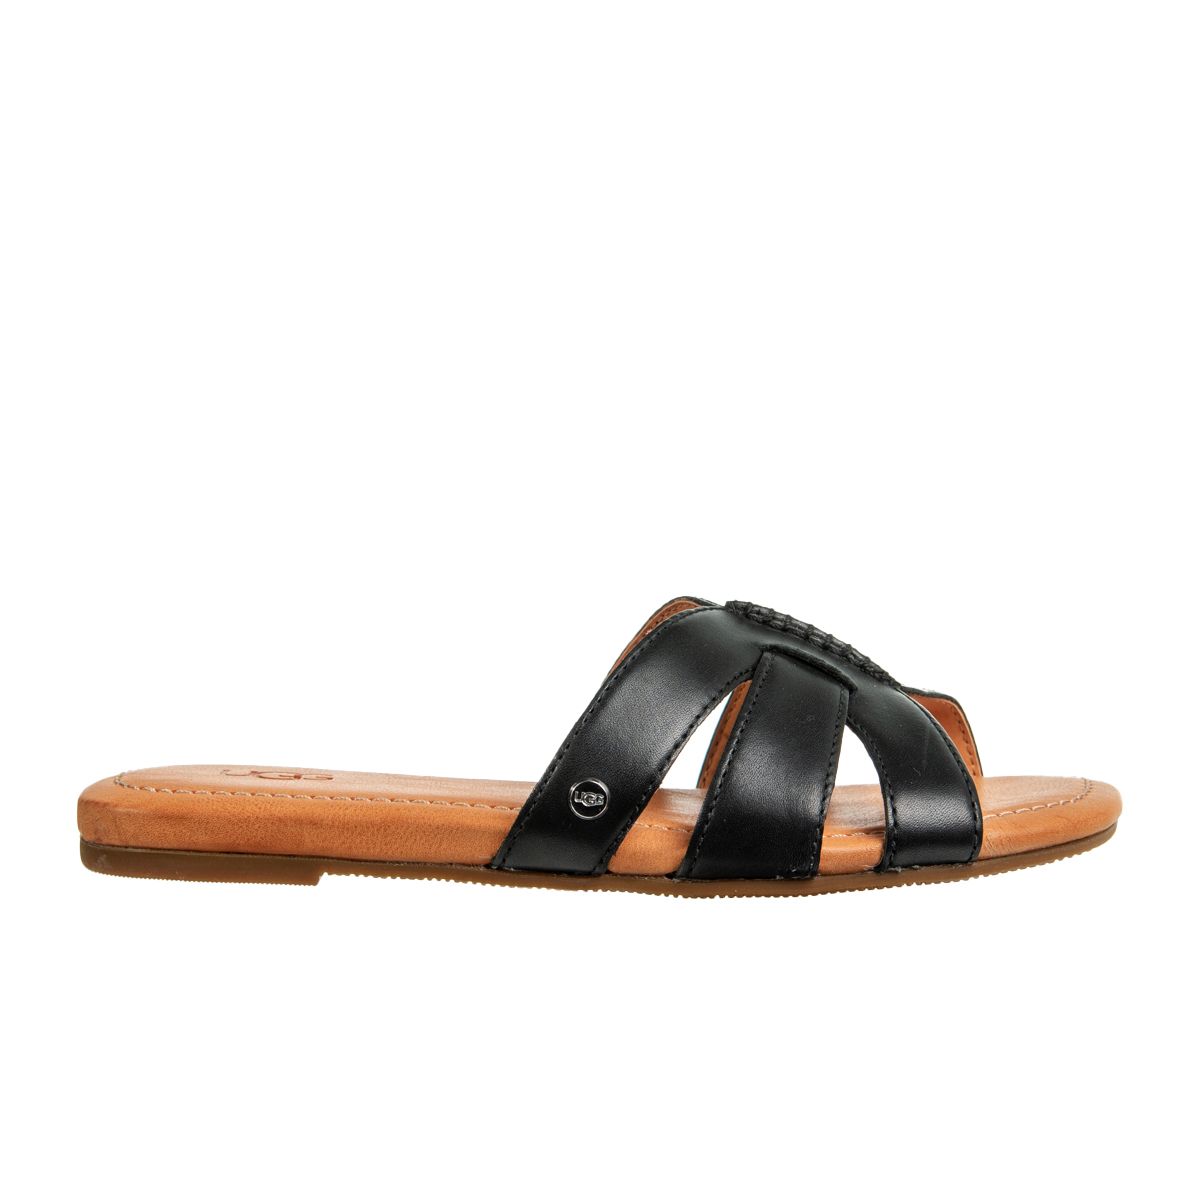 Ugg Teague Sandals with Slides 1119750